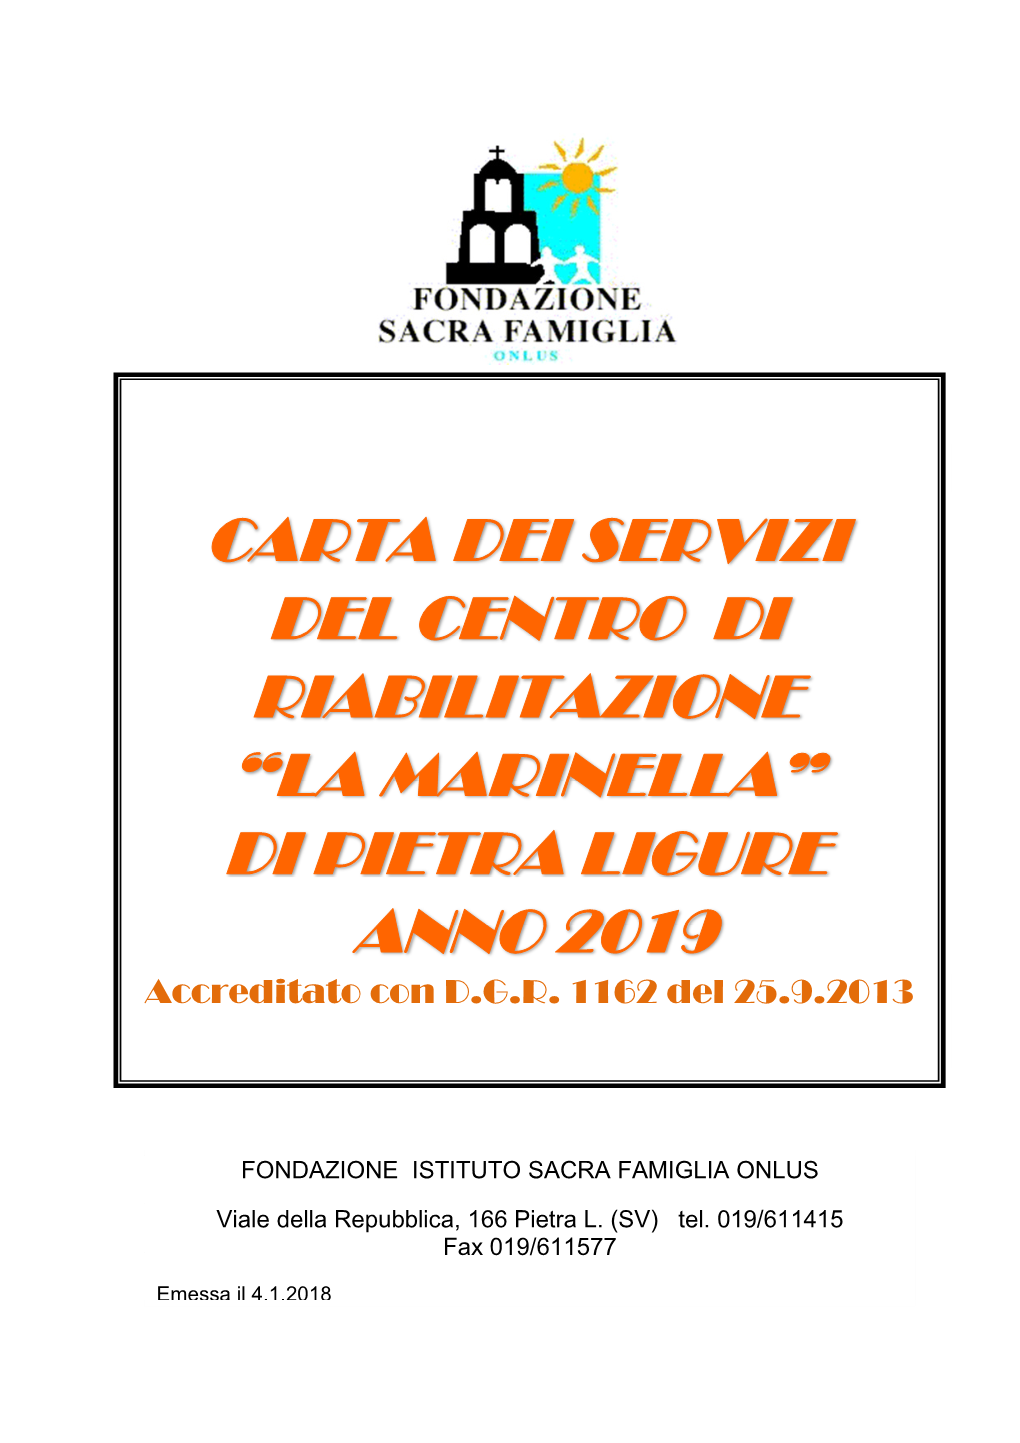 Carta Dei Servizi Del Centro Di Riabilitazione “La Marinella” Di Pietra Ligure Anno 2019